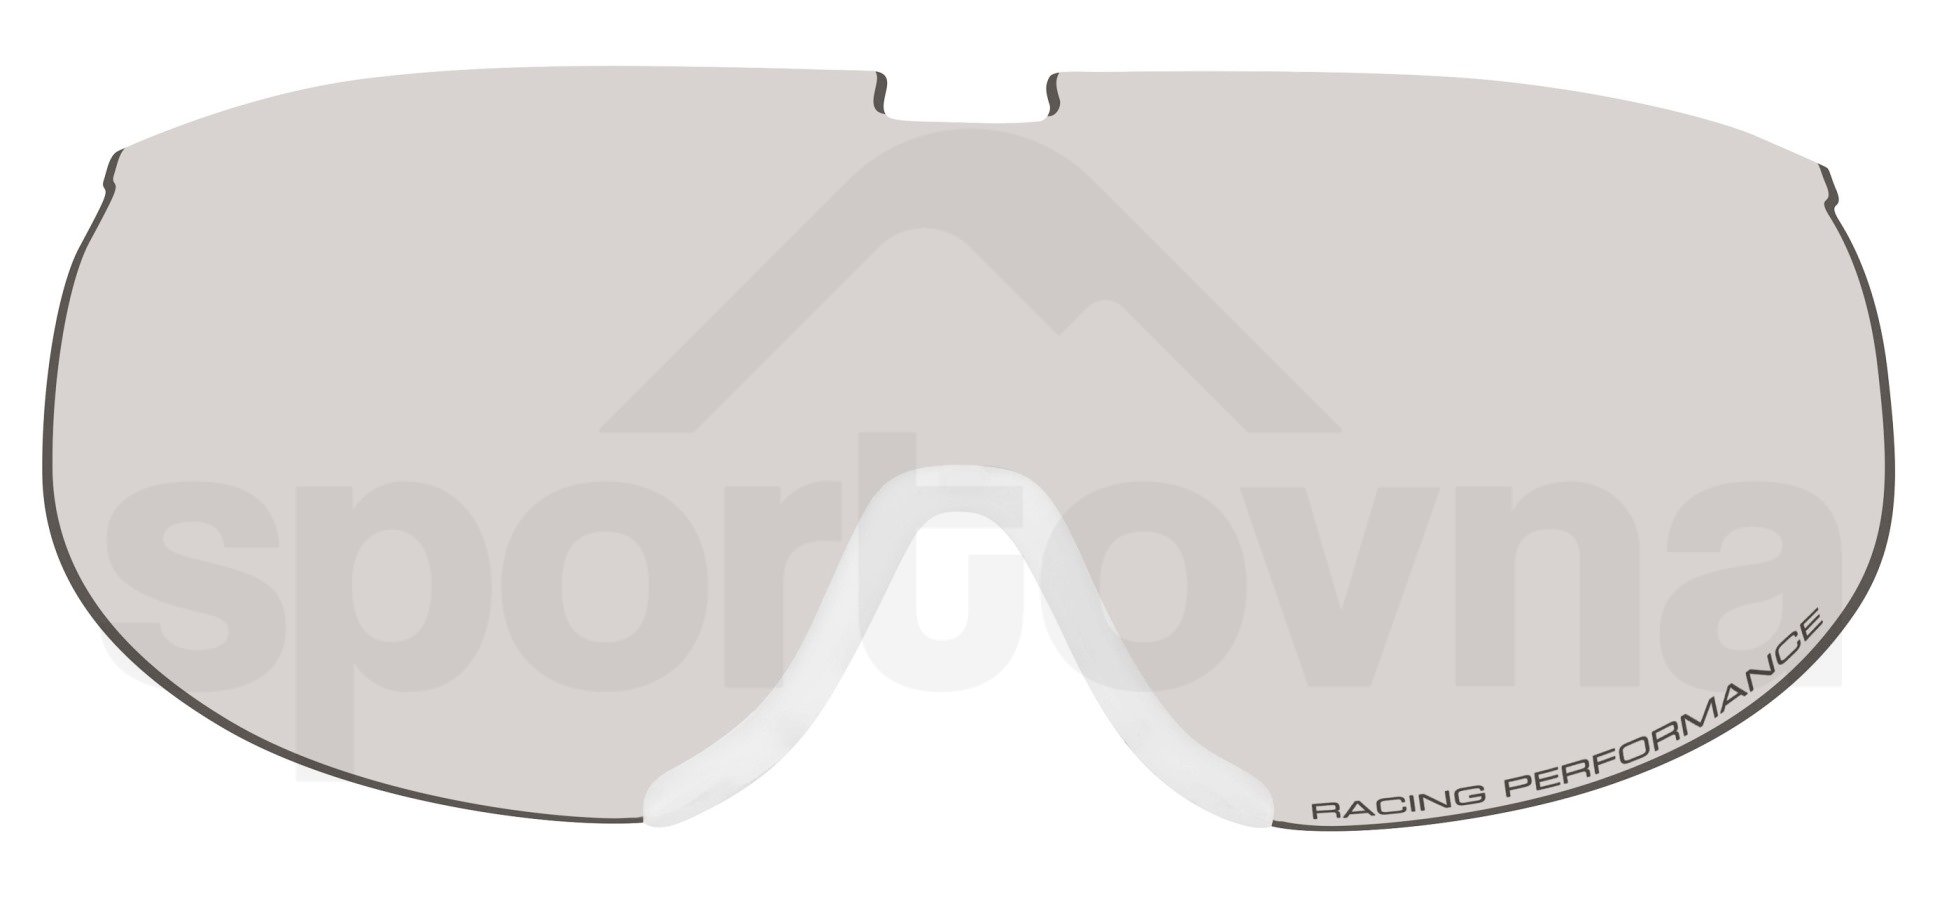 Běžkařské brýle Relax Nordic HTG27D - oranžová